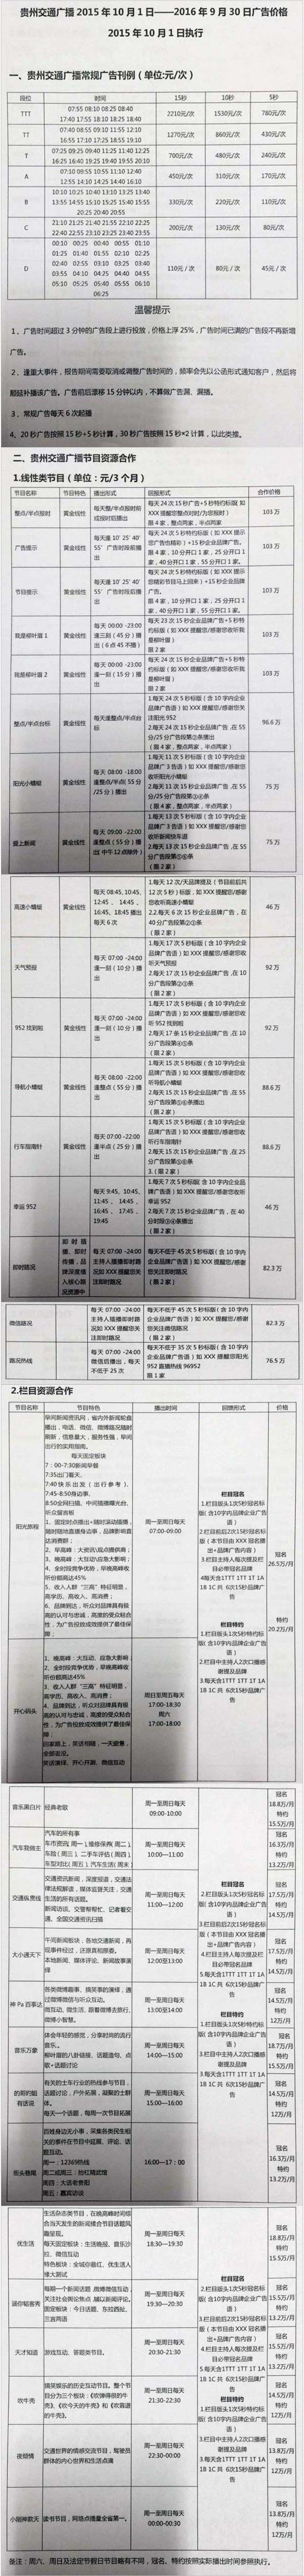 2016贵州人民广播电台交通广播 FM95.2广告报价表.jpg